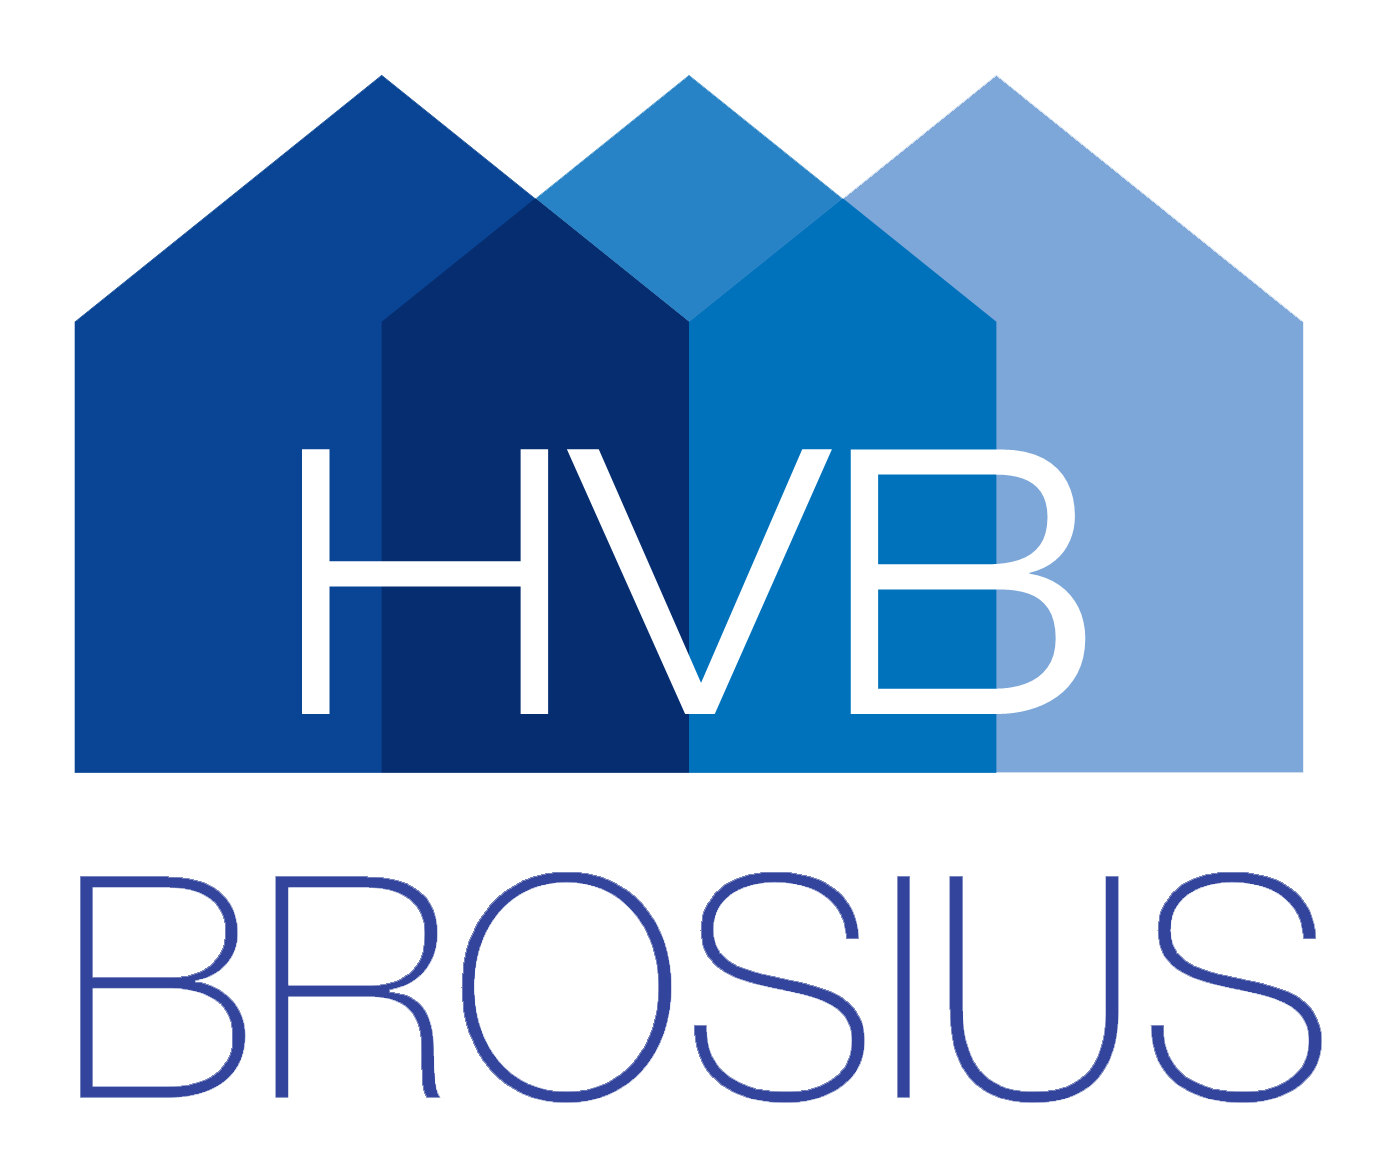 Brosius logo